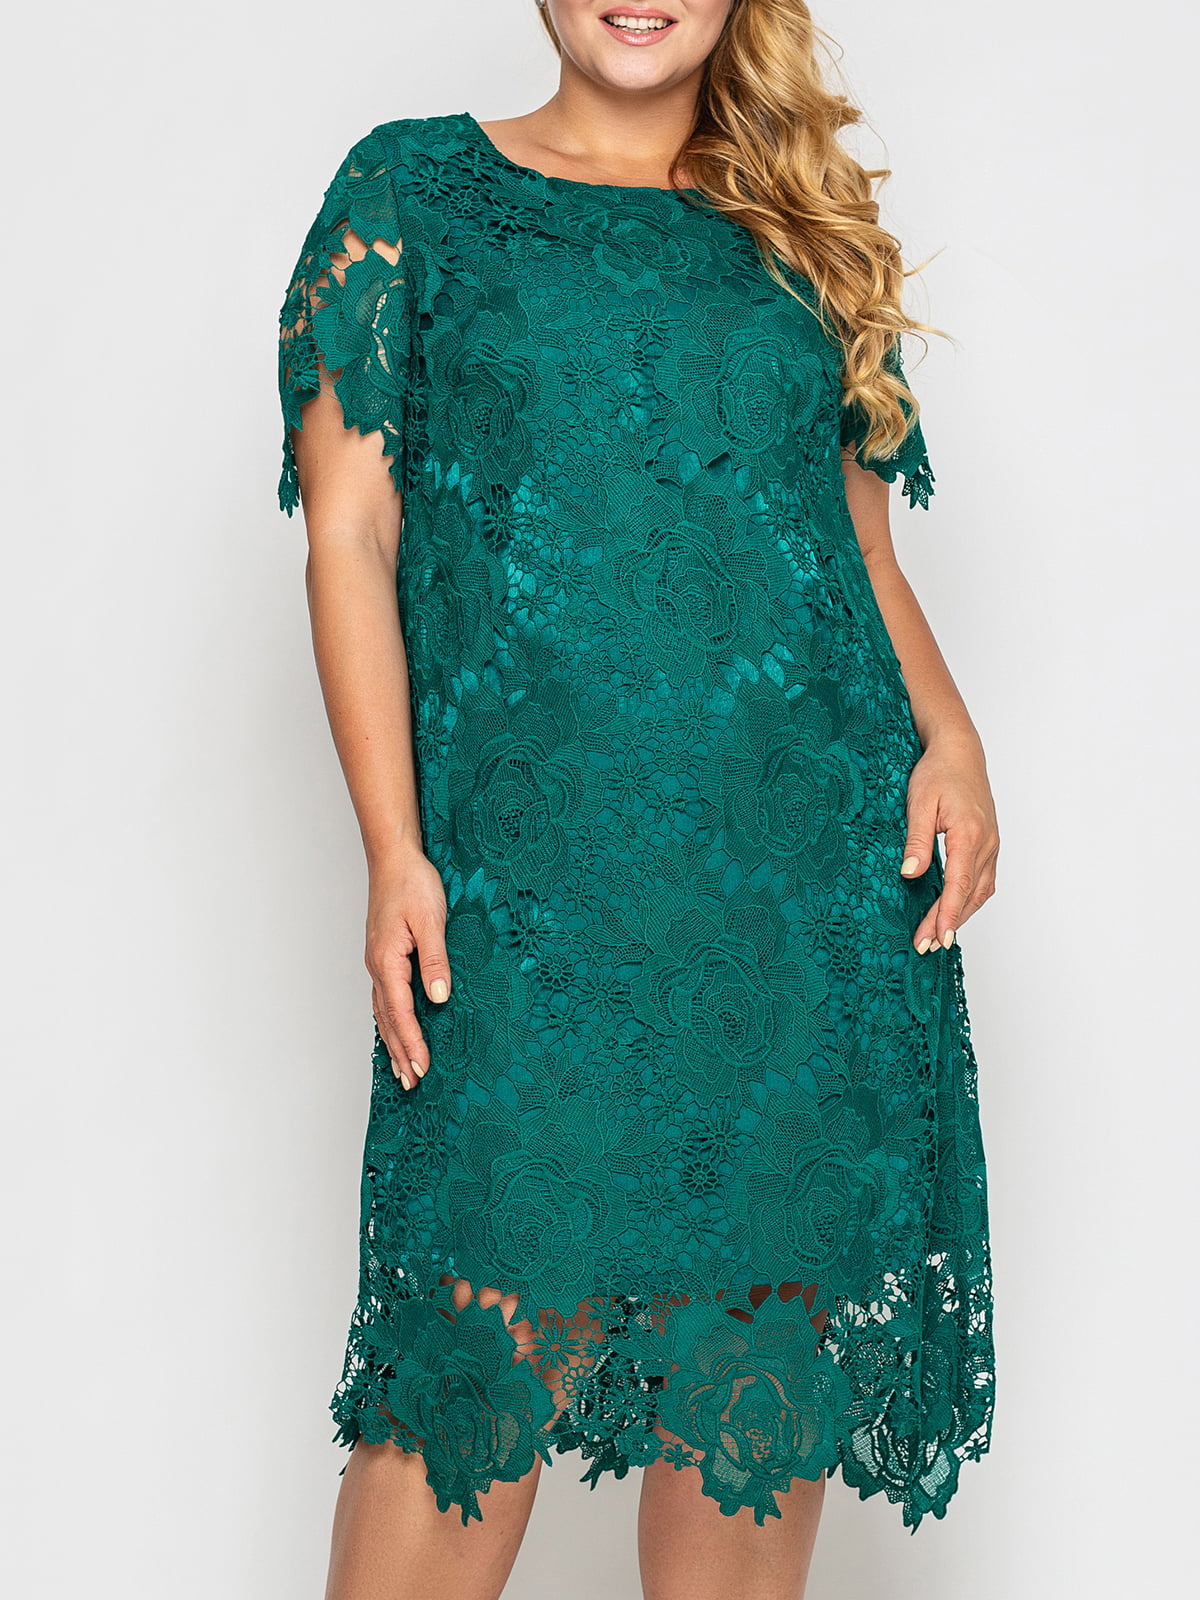 Сукня-футляр зелена з візерунком | 5909159